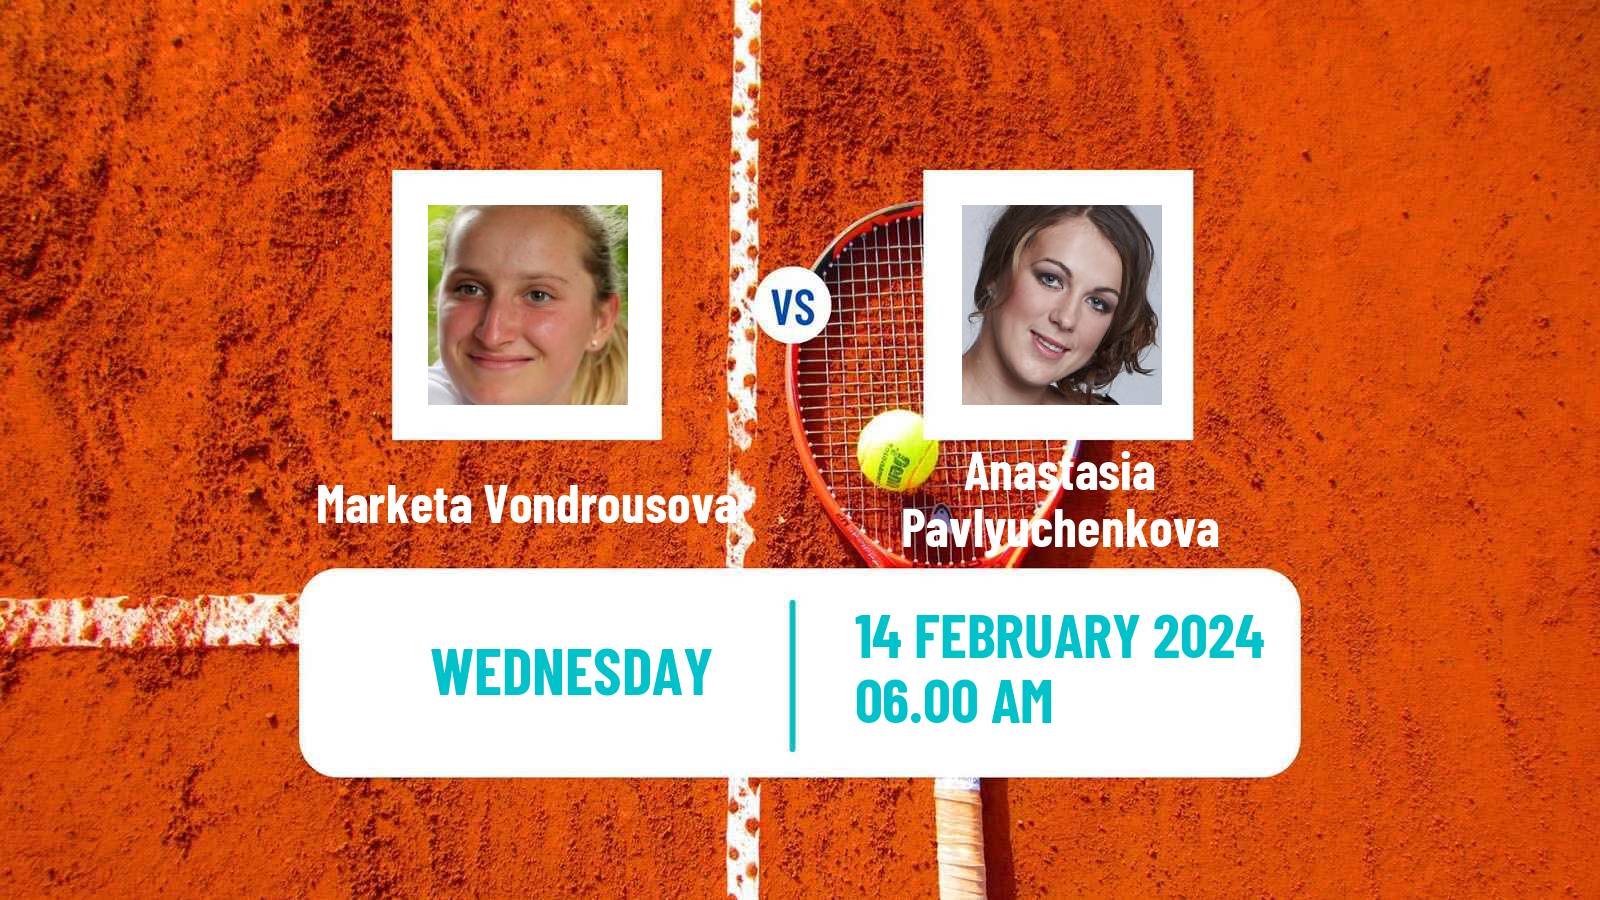 Tennis WTA Doha Marketa Vondrousova - Anastasia Pavlyuchenkova